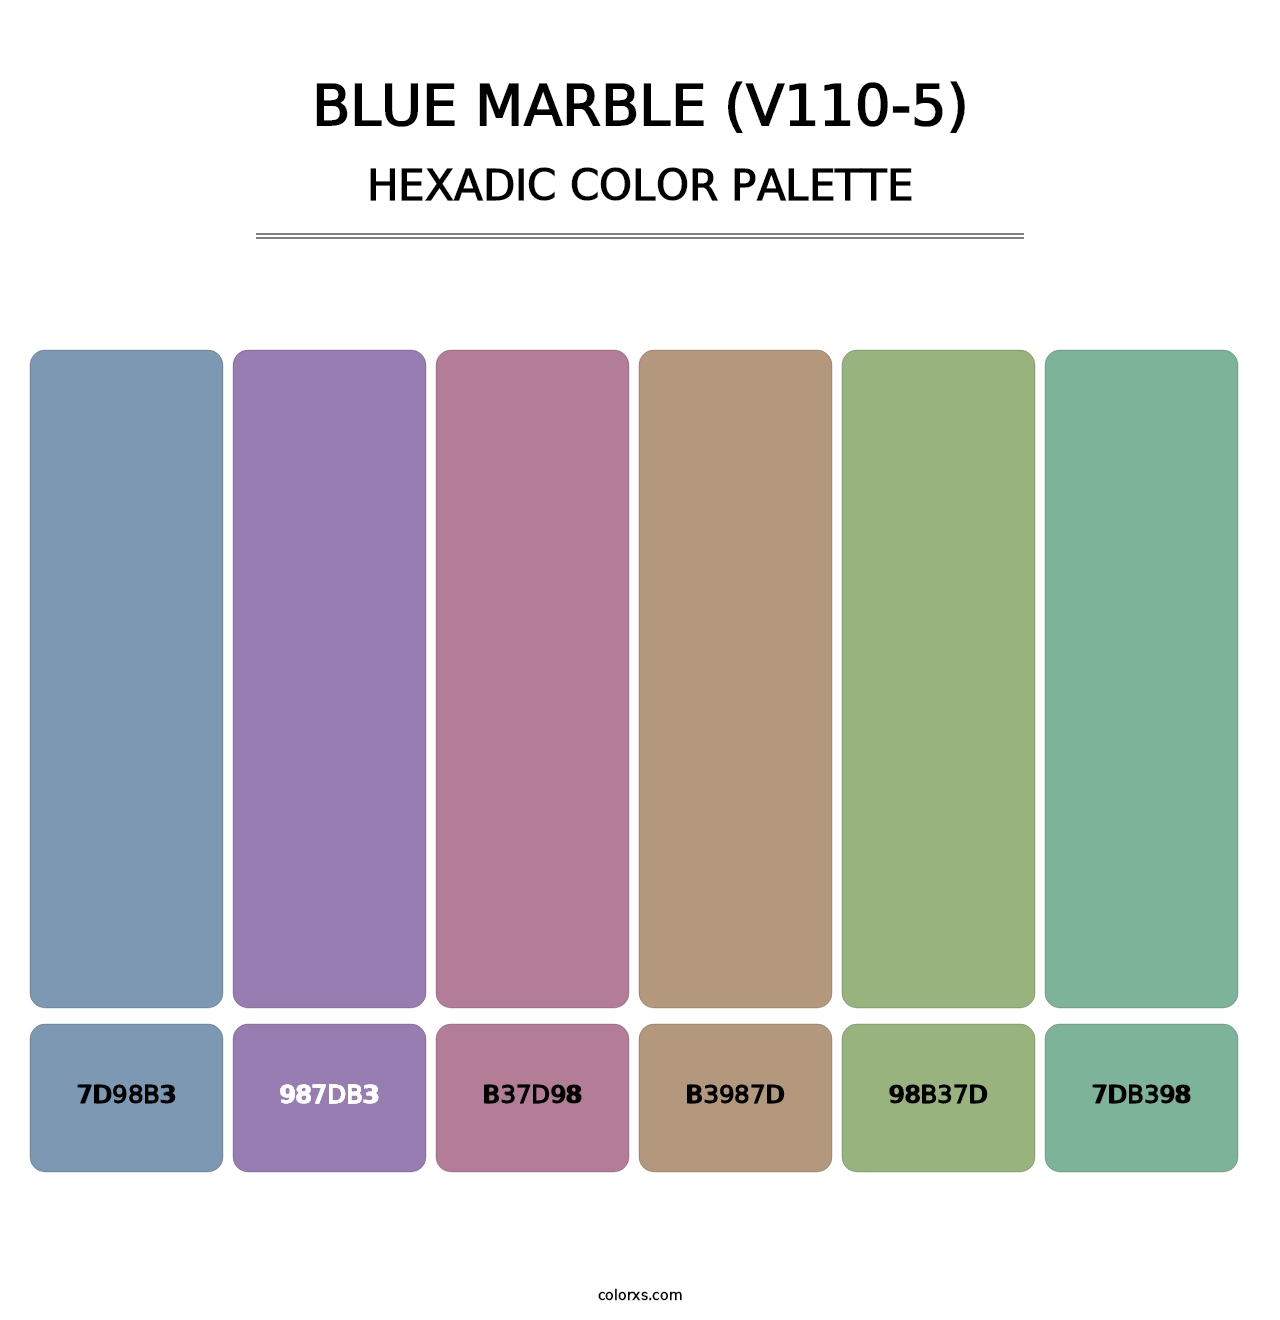 Blue Marble (V110-5) - Hexadic Color Palette